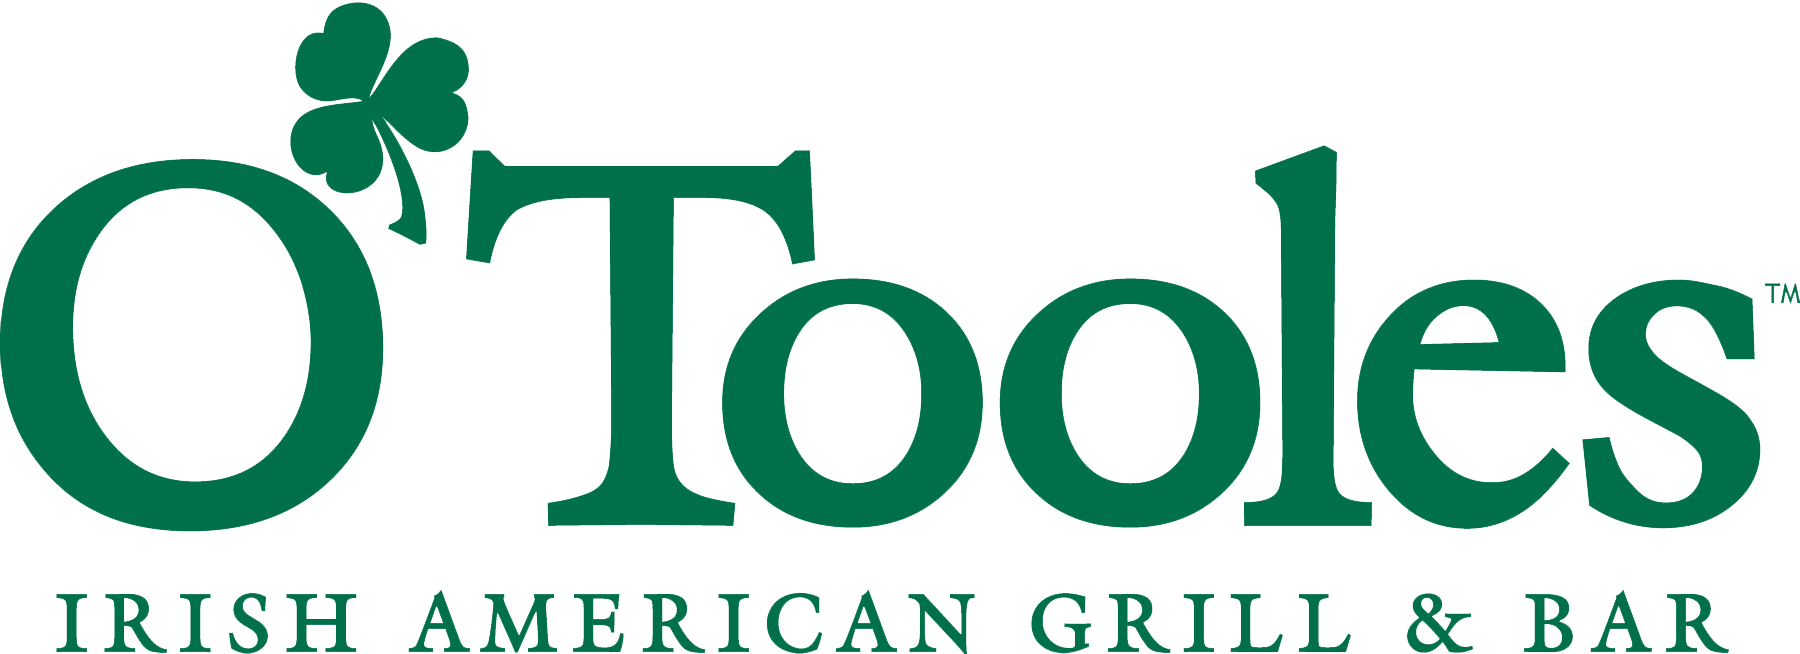 O’Toole’s Irish American Bar & Grill